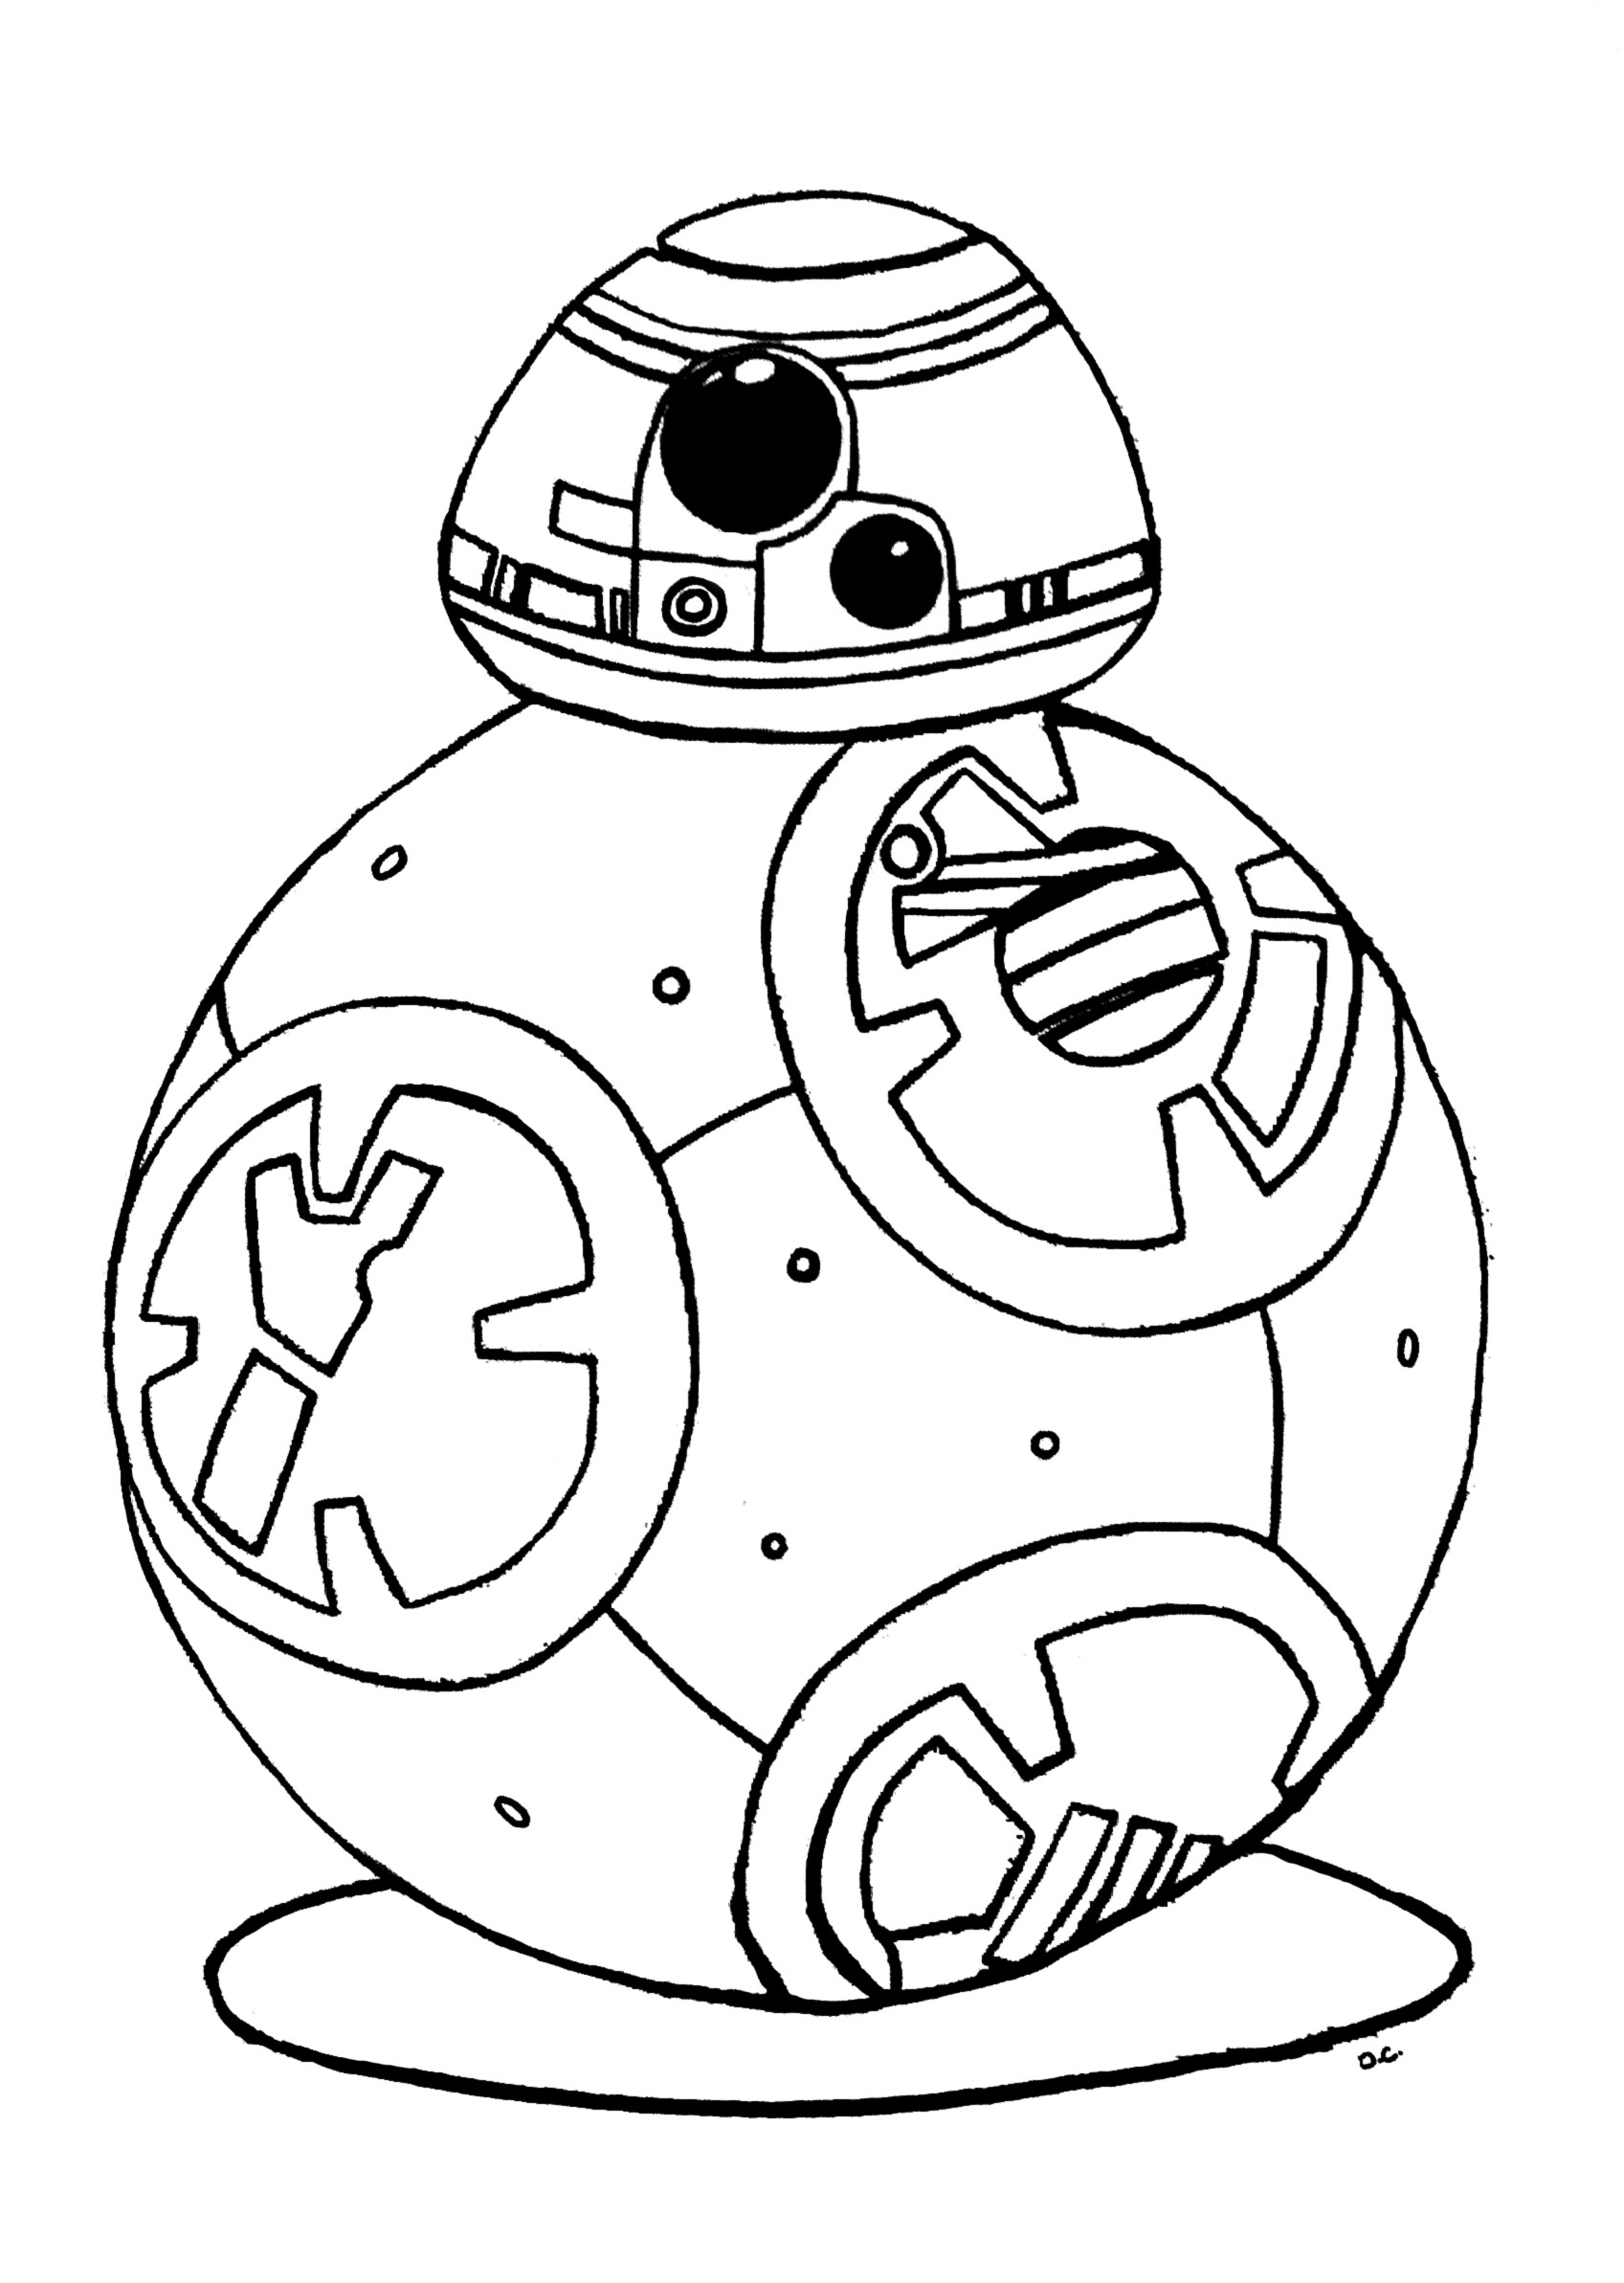 Coloriage inspiré du robot droïde BB-8 de Star Wars 7 (Le réveil de la force)